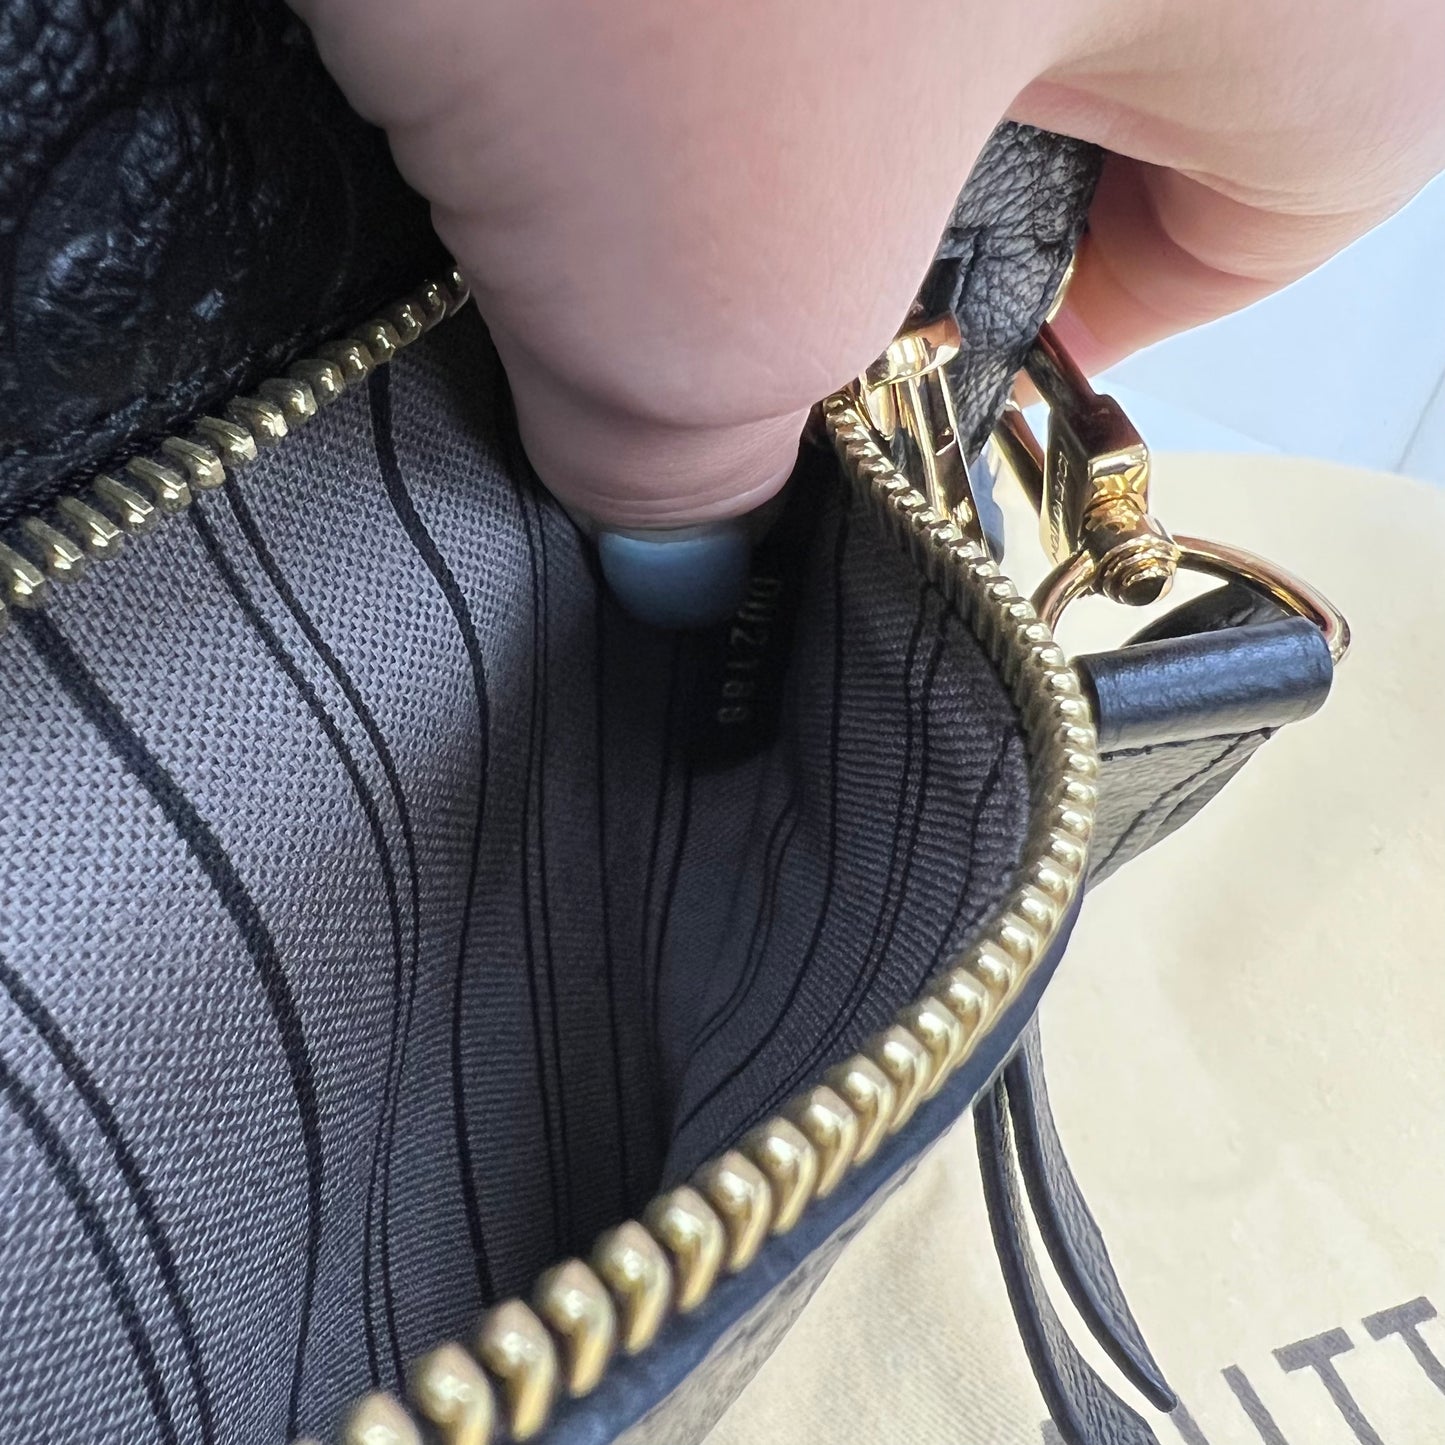 Louis Vuitton Pochette Métis Black Empreinte Leather